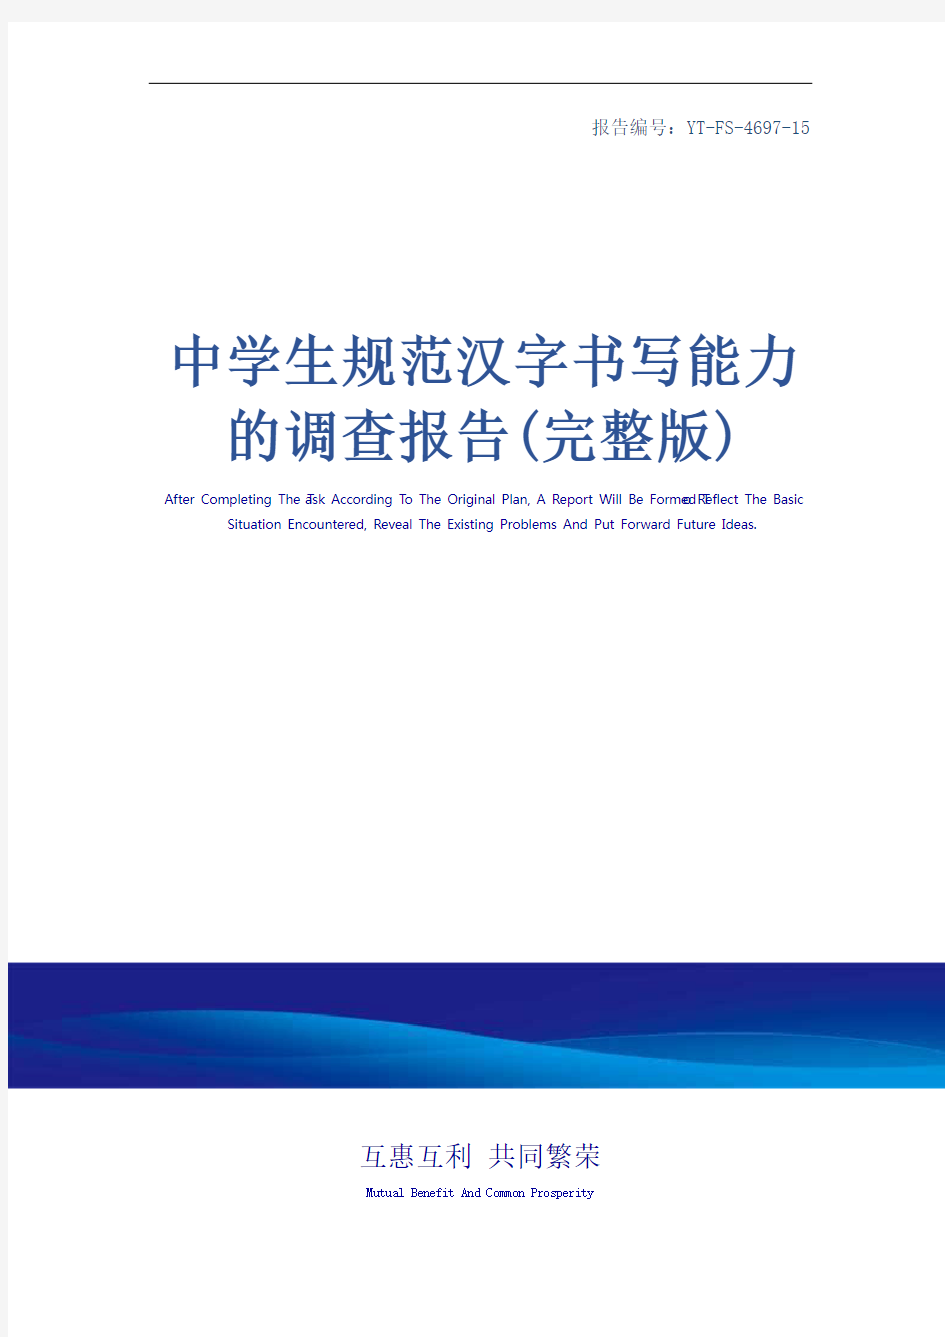 中学生规范汉字书写能力的调查报告(完整版)